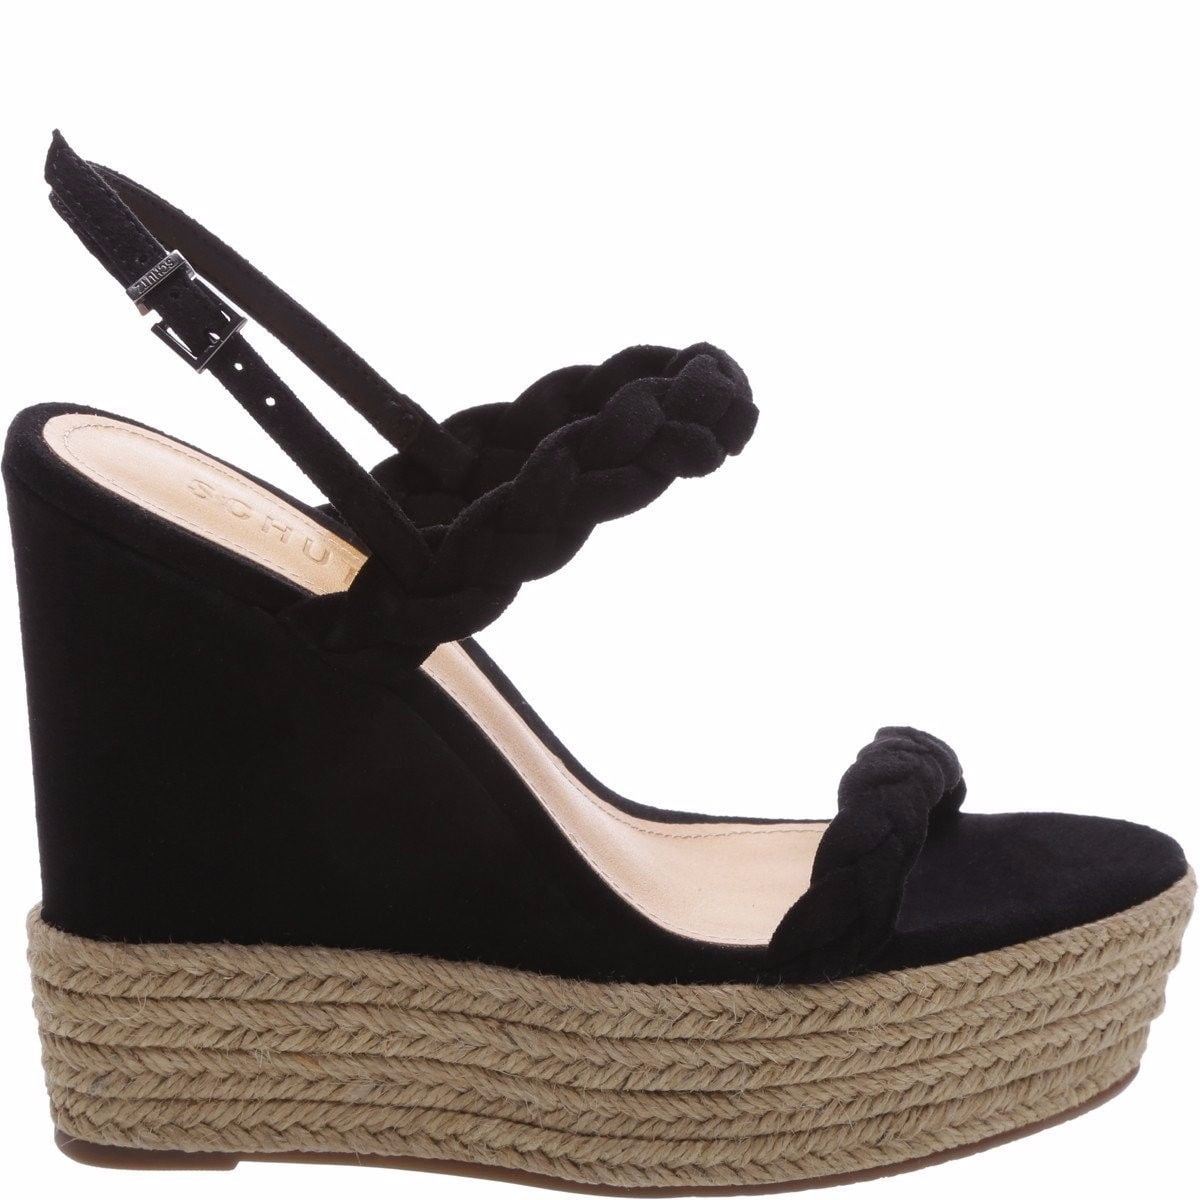 Buy > black wedge sandals walmart > in stock